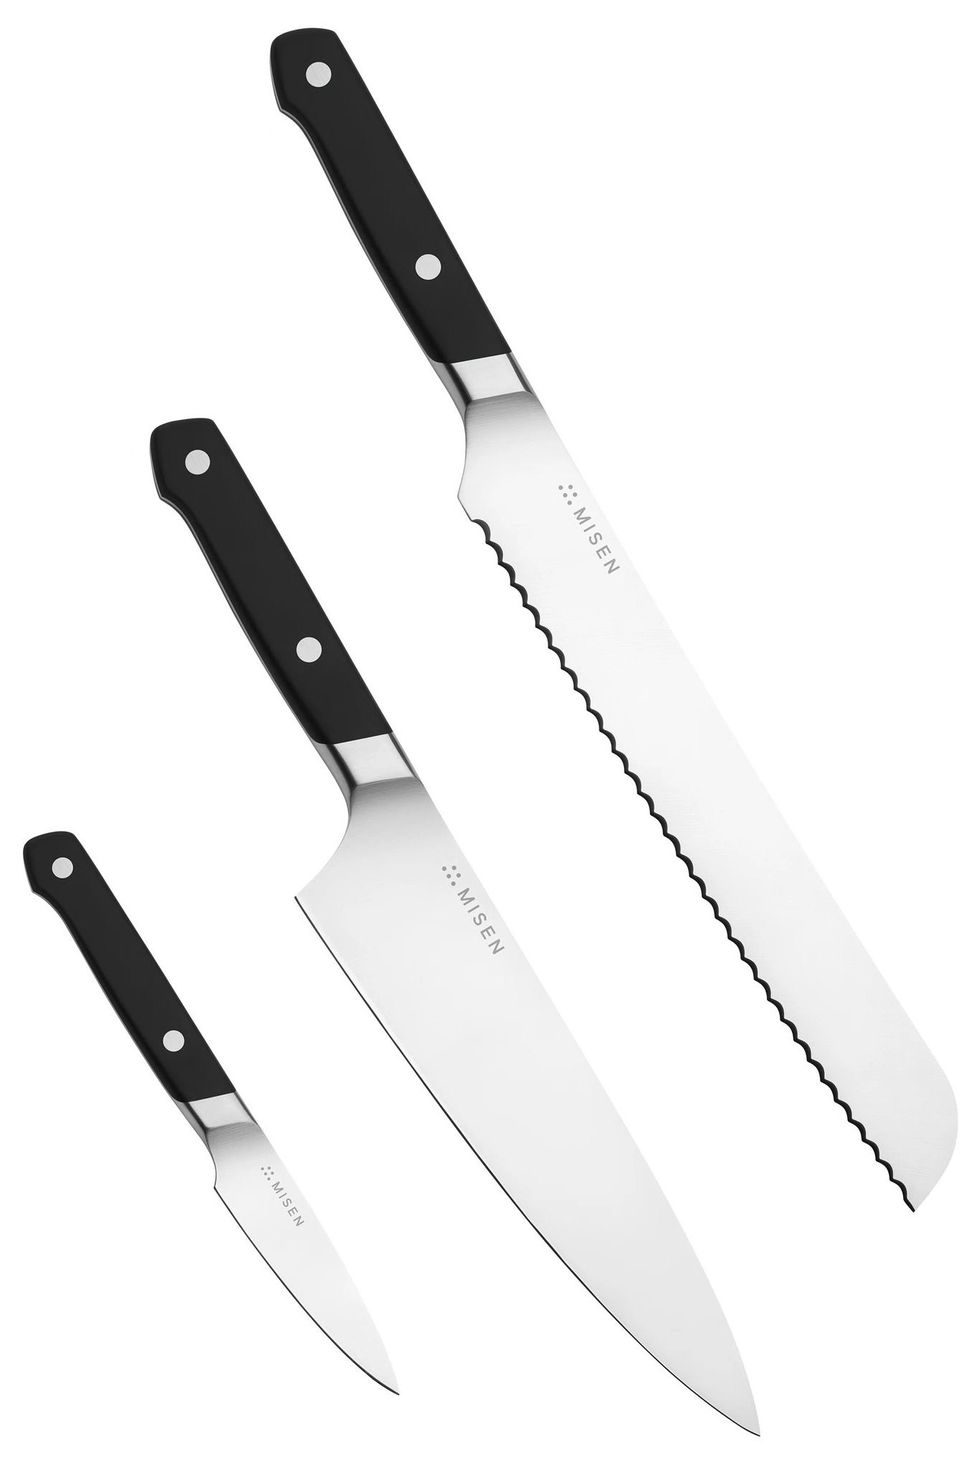 Misen Essentials Knife Set